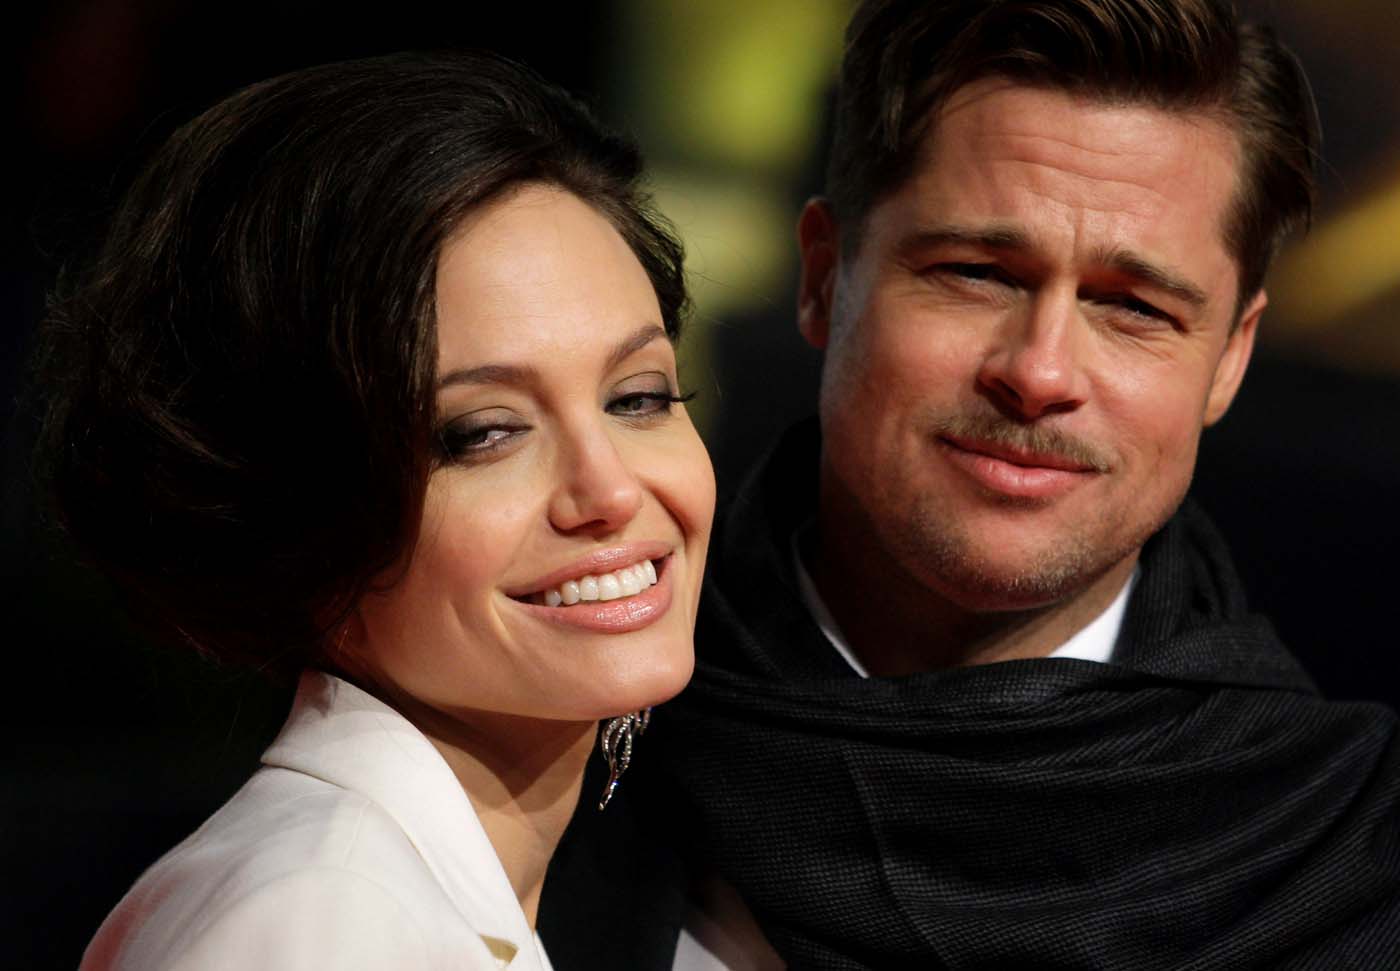 El duro contraataque público de Brad Pitt contra Angelina Jolie que involucra a sus hijos